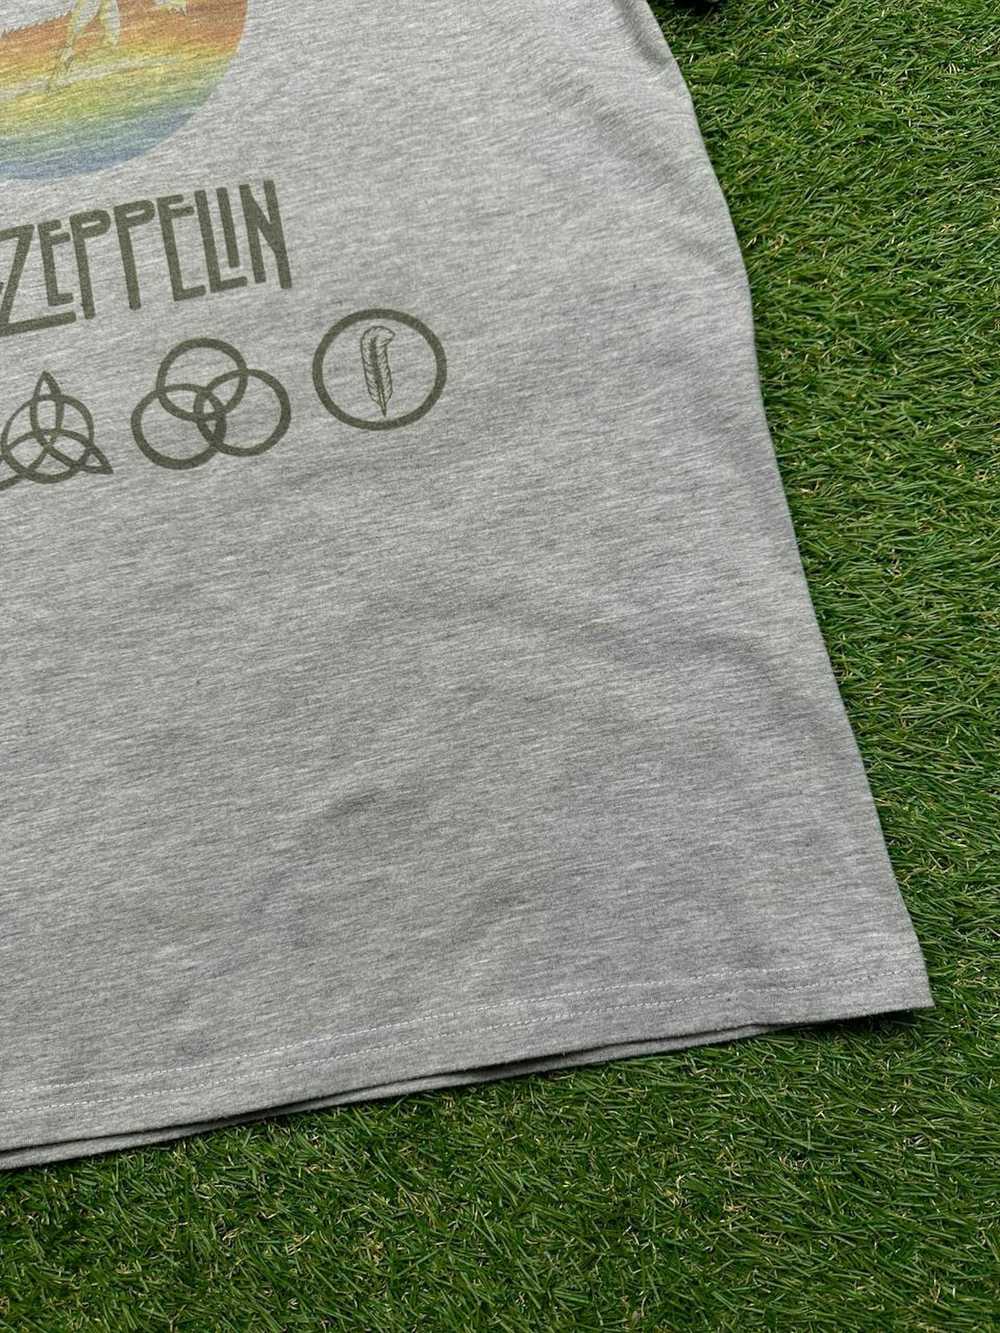 Band Tees × Led Zeppelin × Vintage VTG Led Zeppel… - image 6